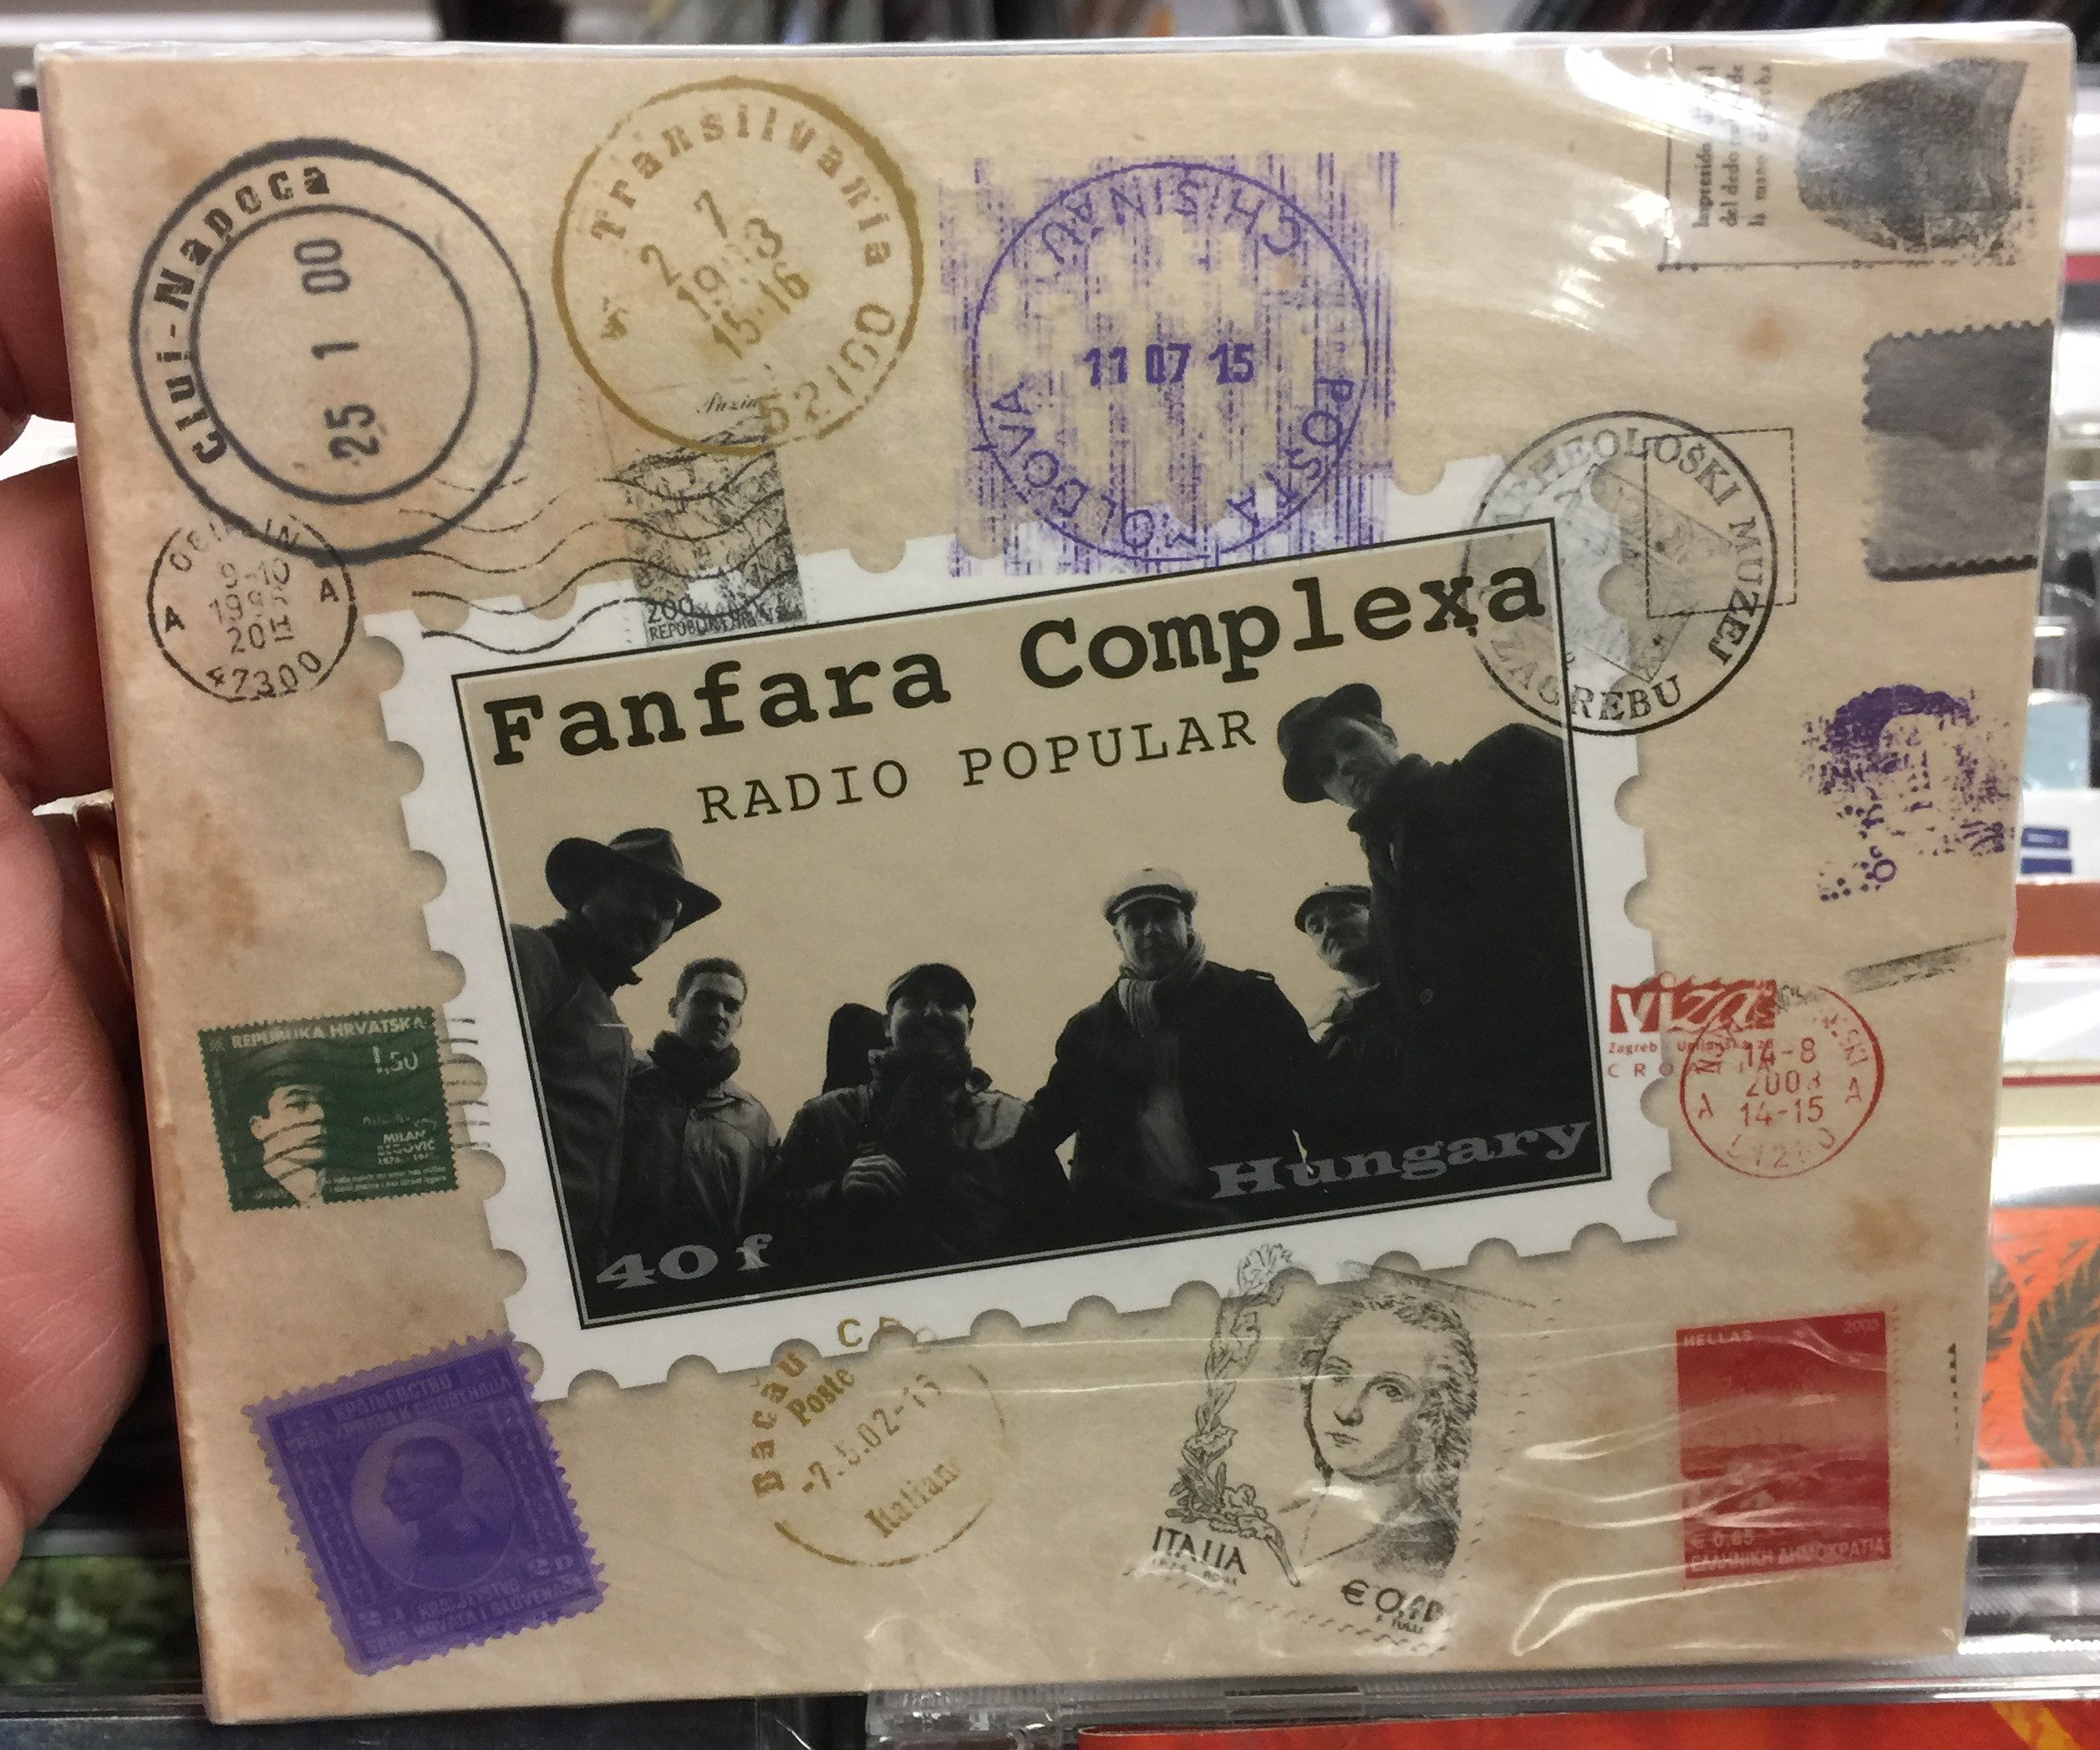 fanfara-complexa-radio-popular-fon-budai-zeneh-z-audio-cd-2011-fa259-2-1-.jpg